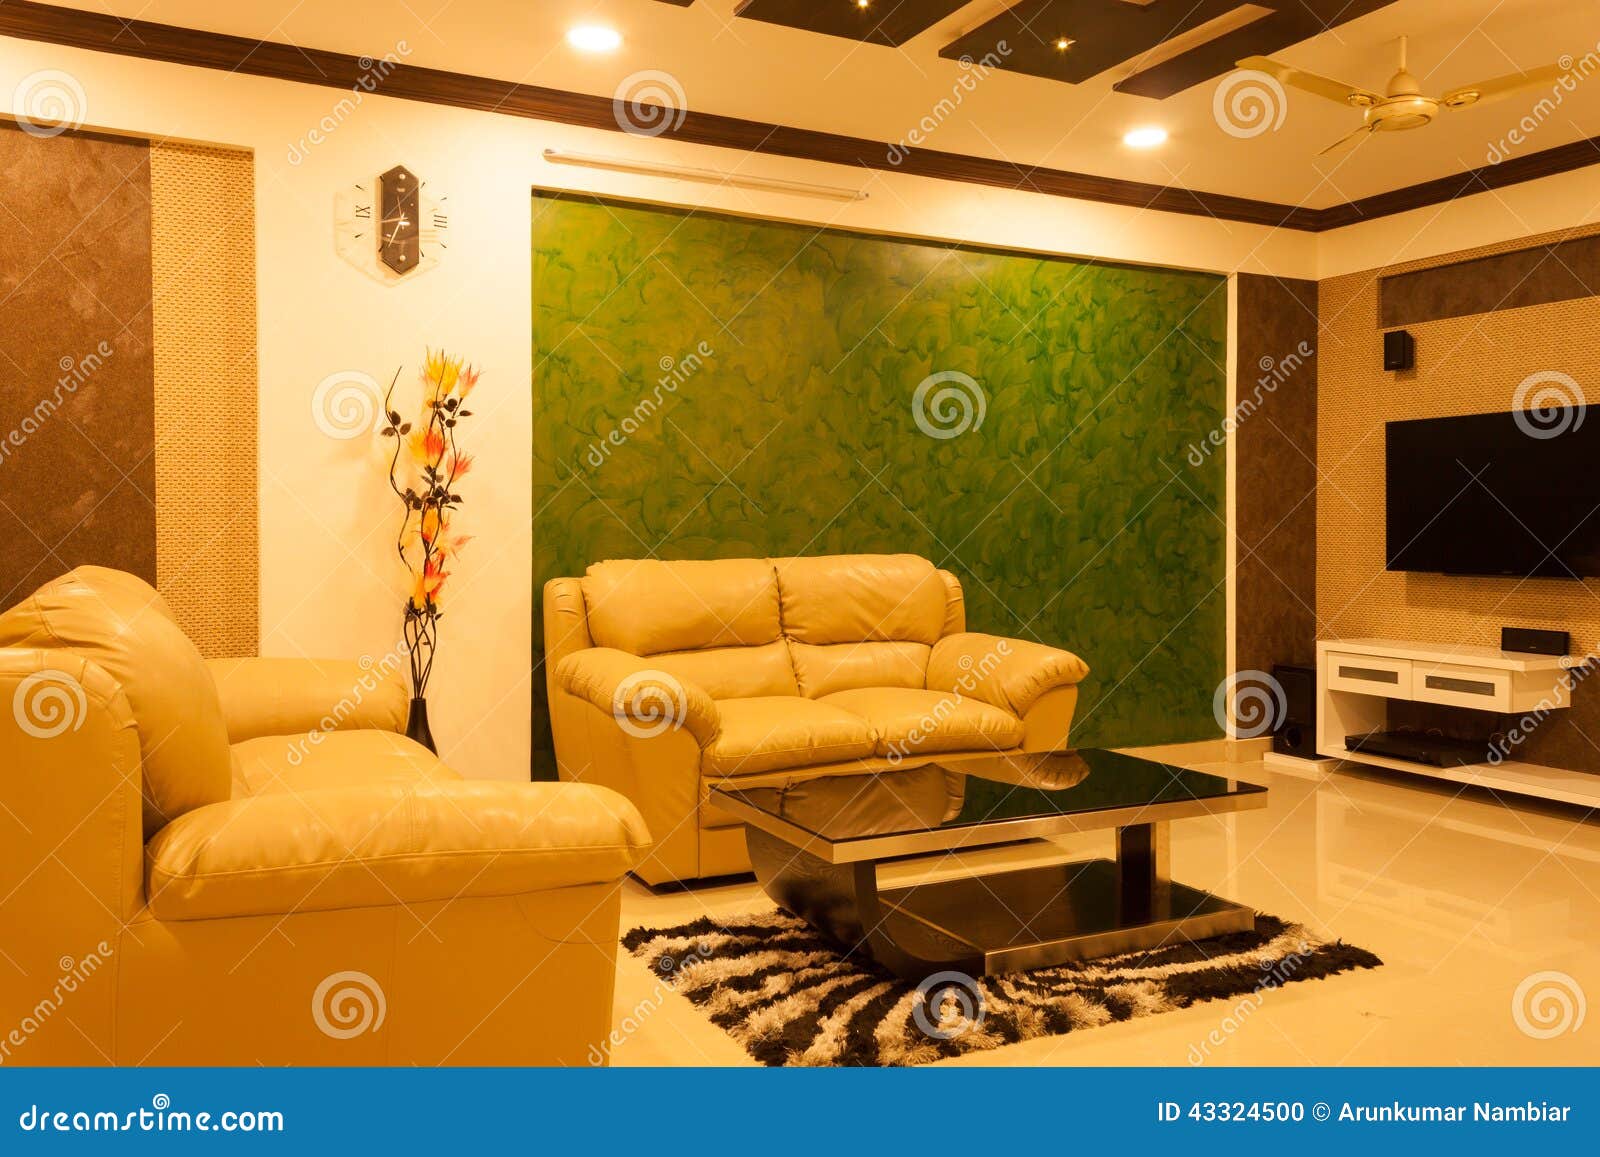 modern living room fargo